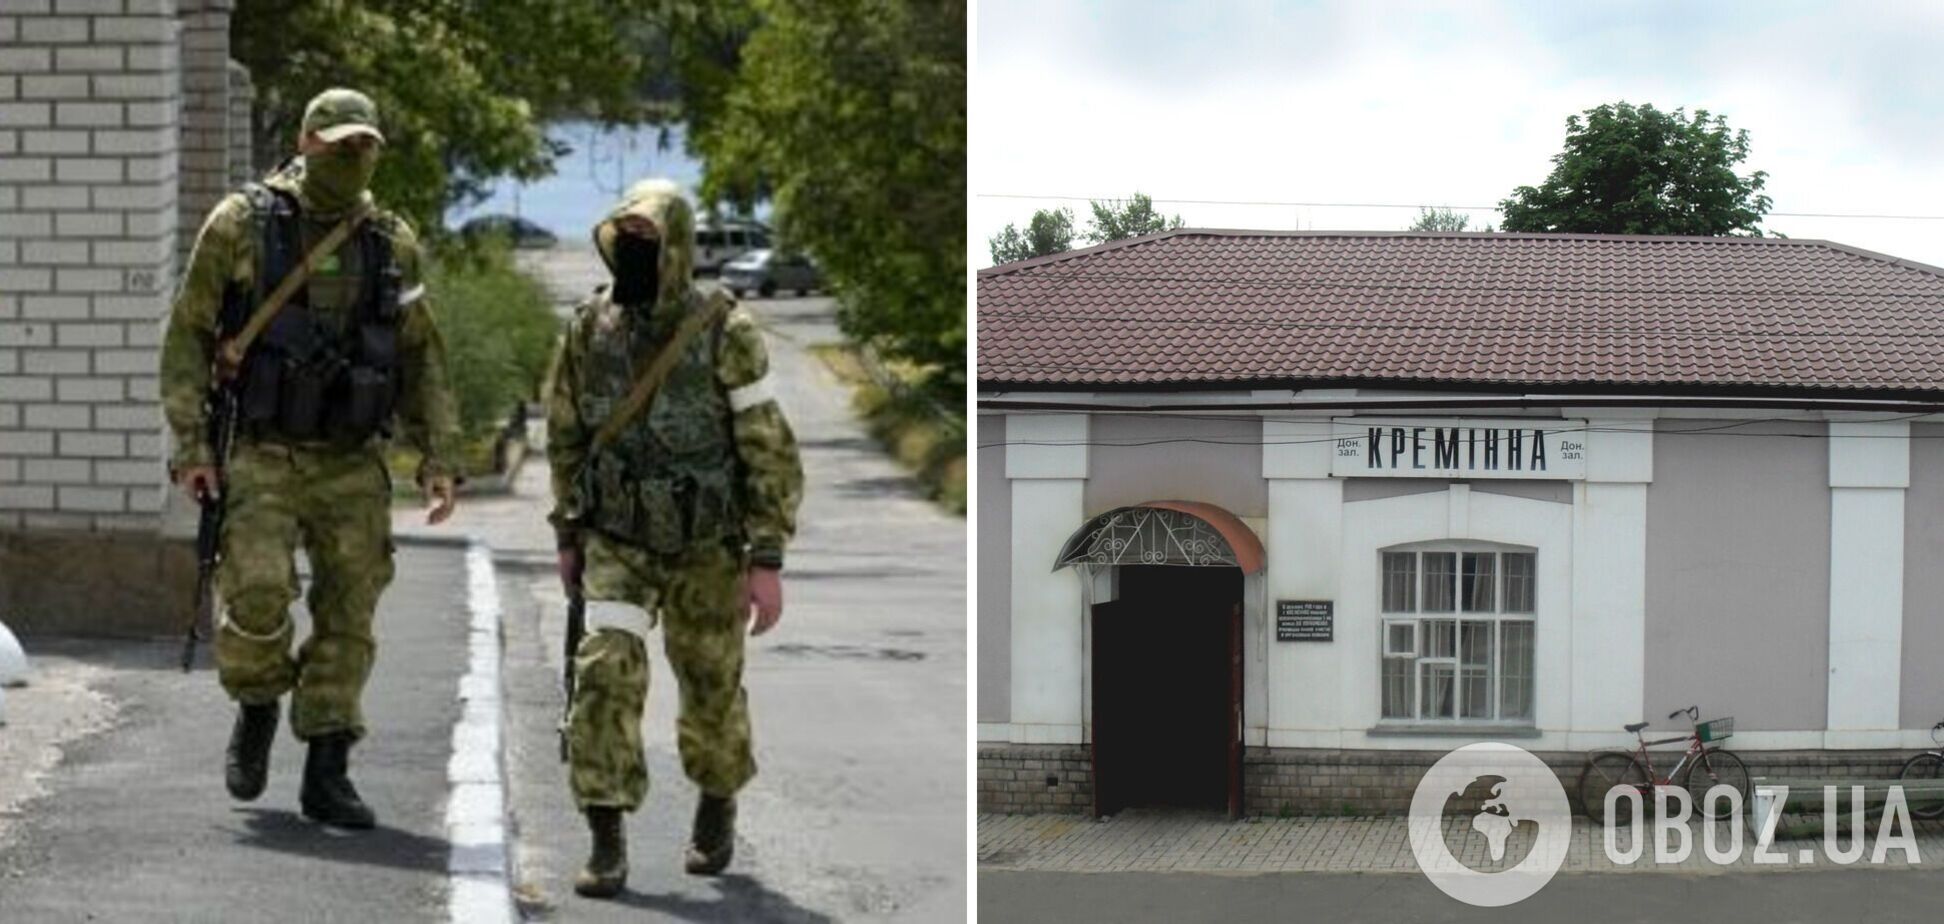 'Мы заходили в дома и просто расстреливали': оккупант признался в массовых гражданских убийствах в Луганской области. Перехват